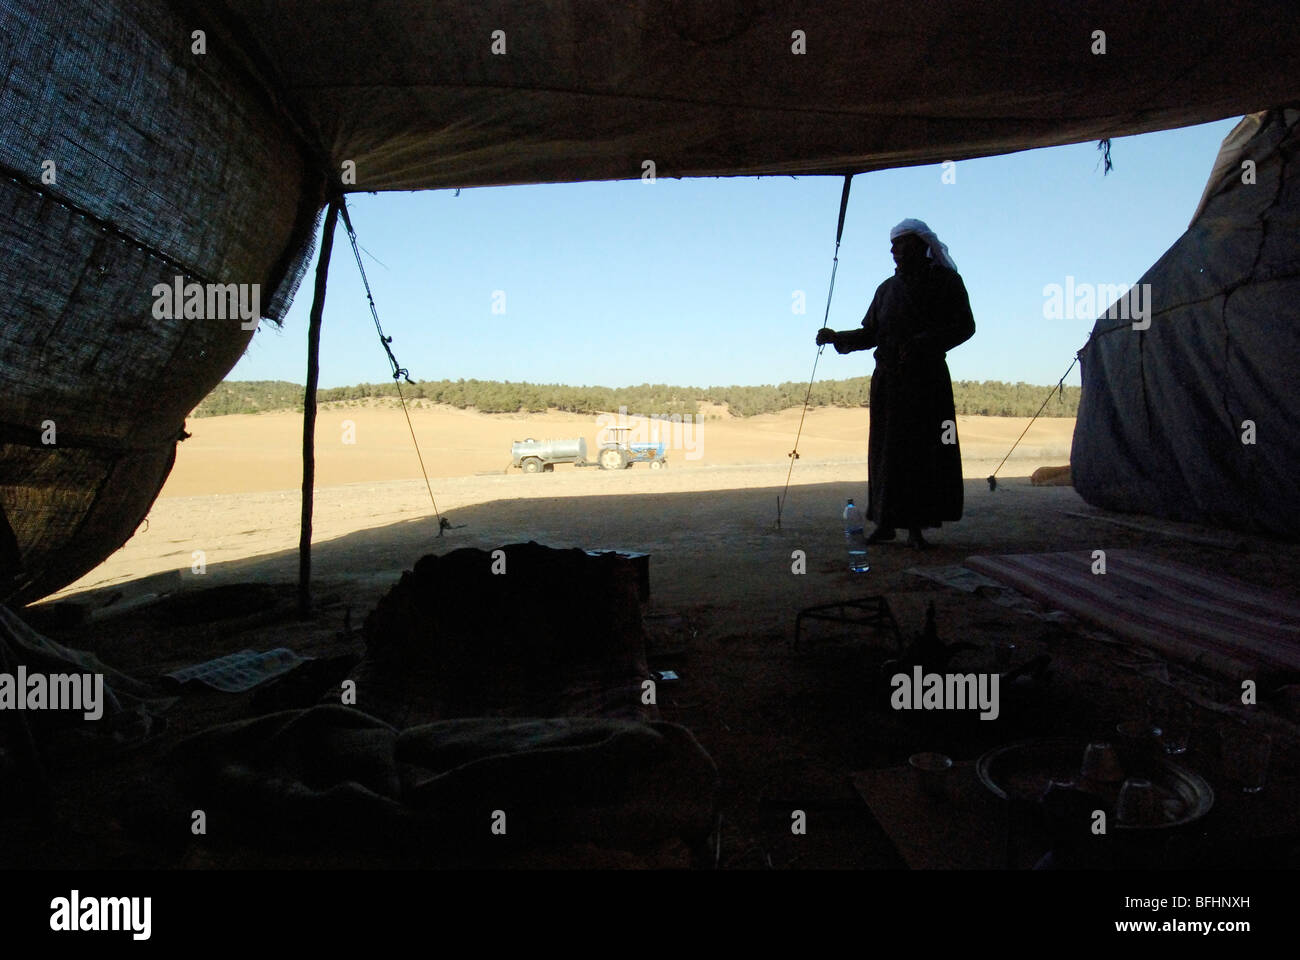 Israel, Negev Desert, Bedouin man in his tent Stock Photo